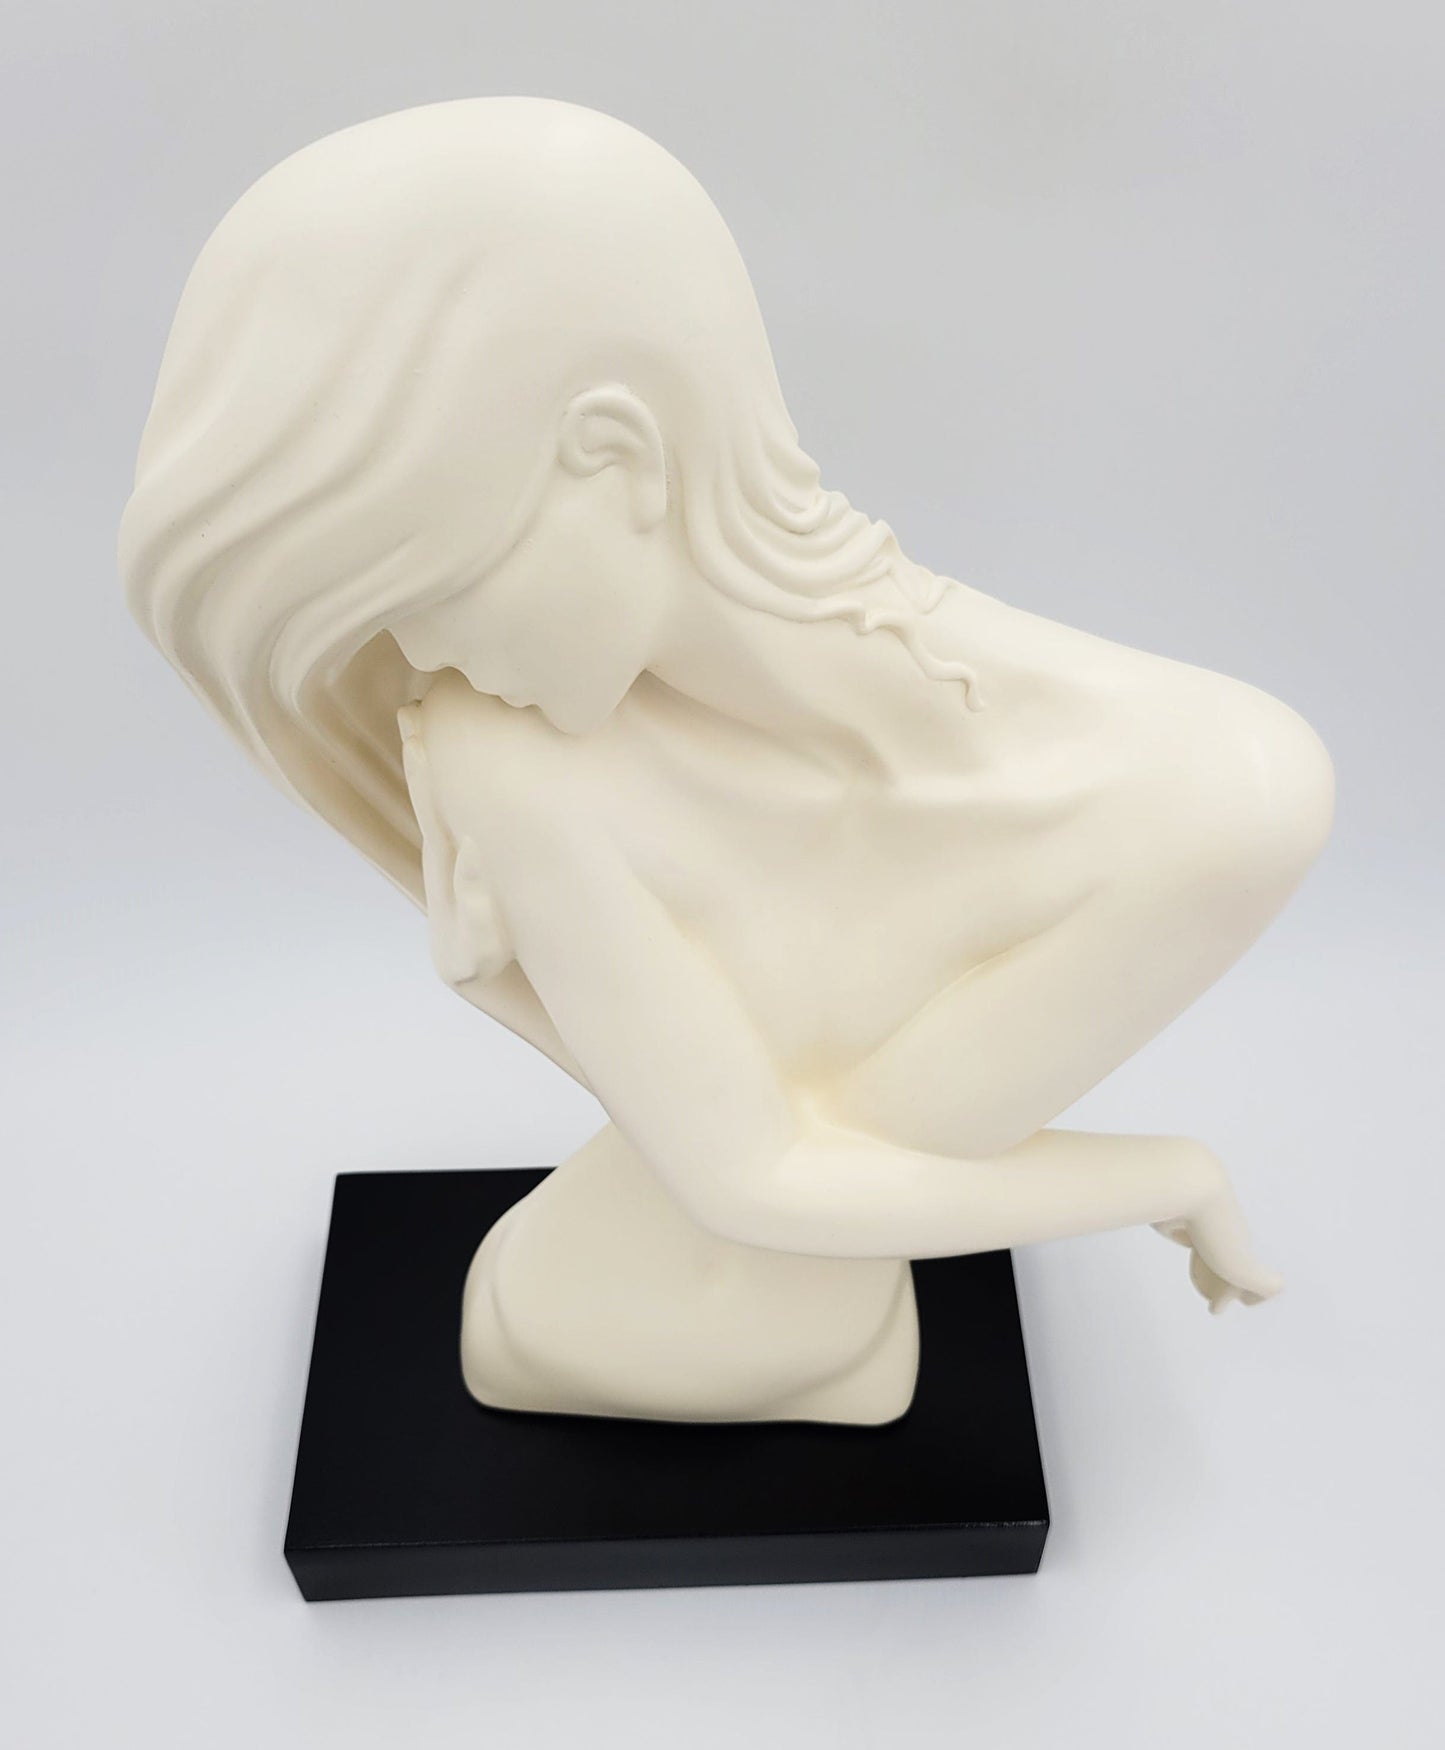 Austin Productions Sculpture Austin Productions ceramic Sculpture "A Woman's Torso" Signed Danel